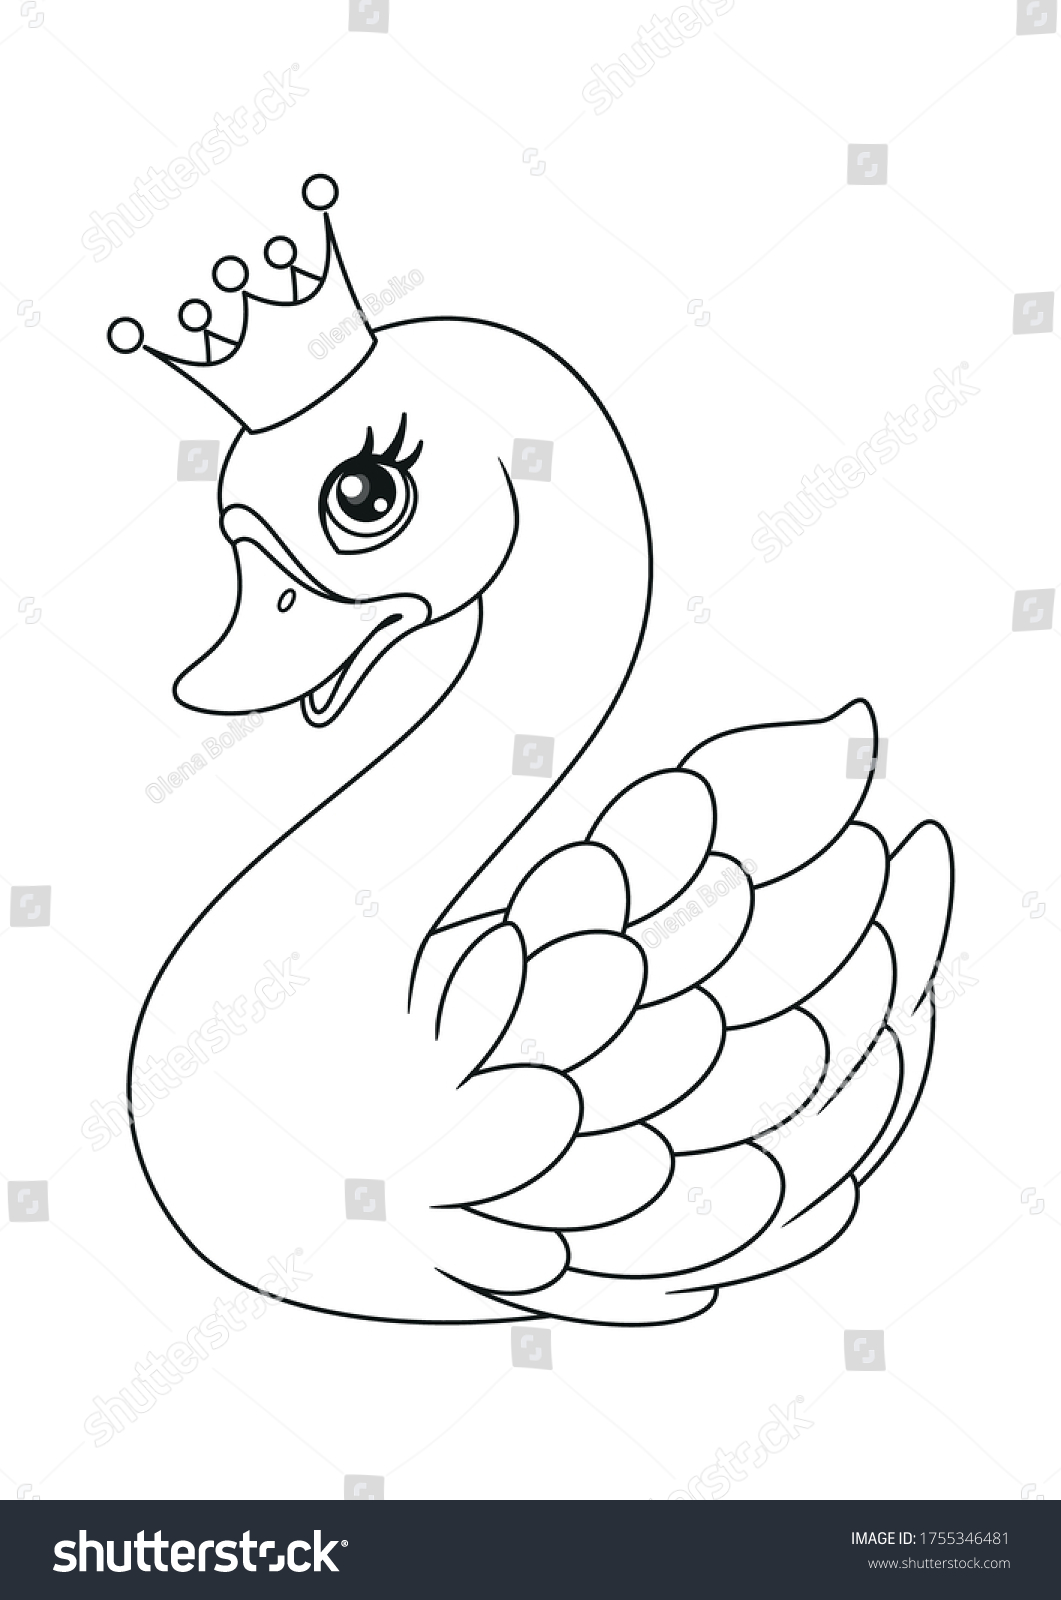 Лебедь с короной раскраска для детей